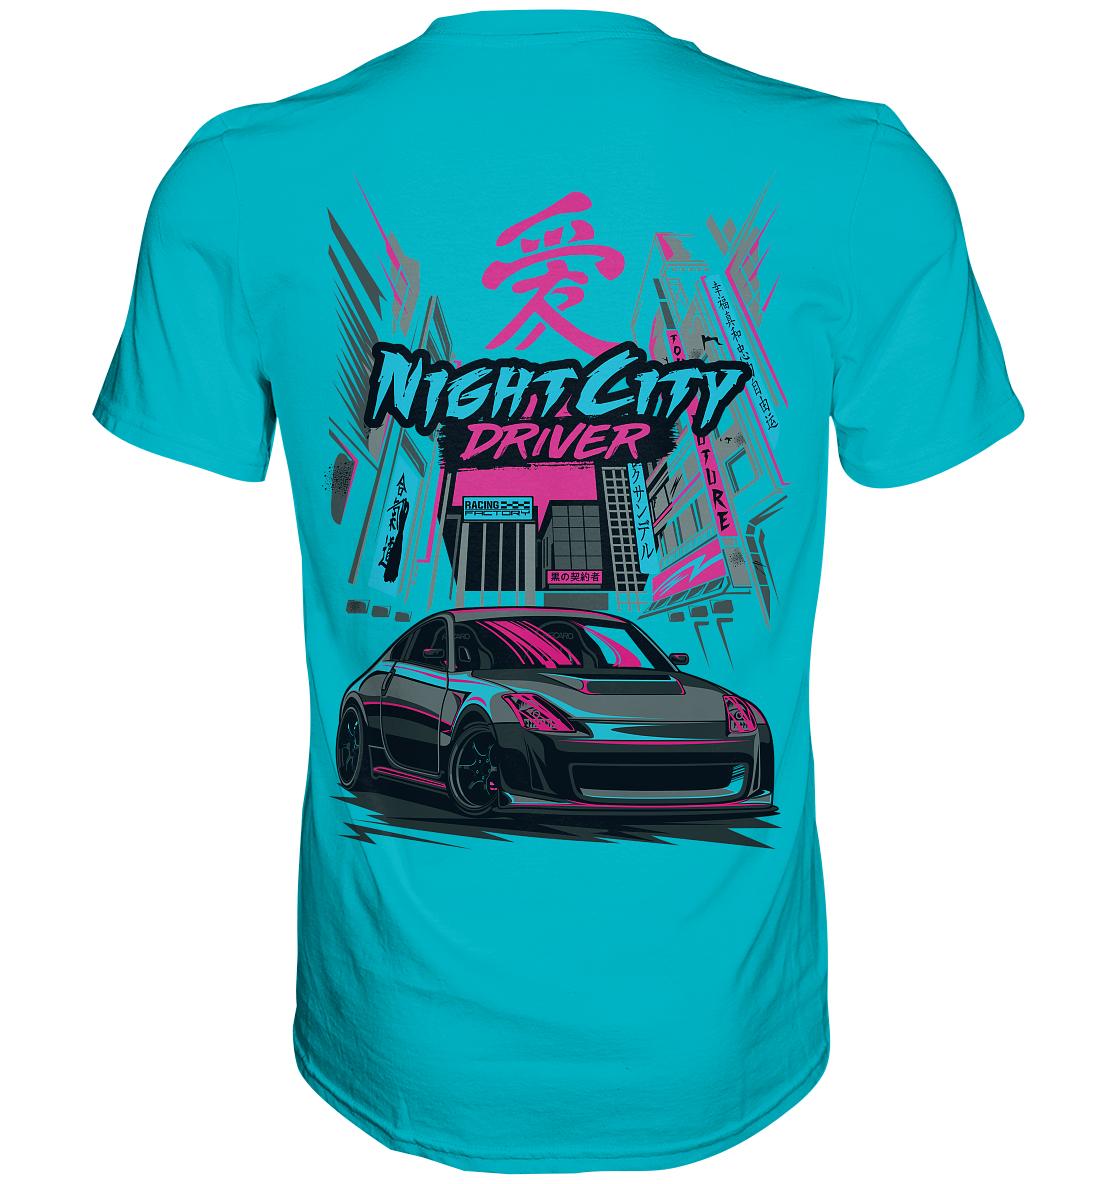 350Z "Night City" - Premium Shirt